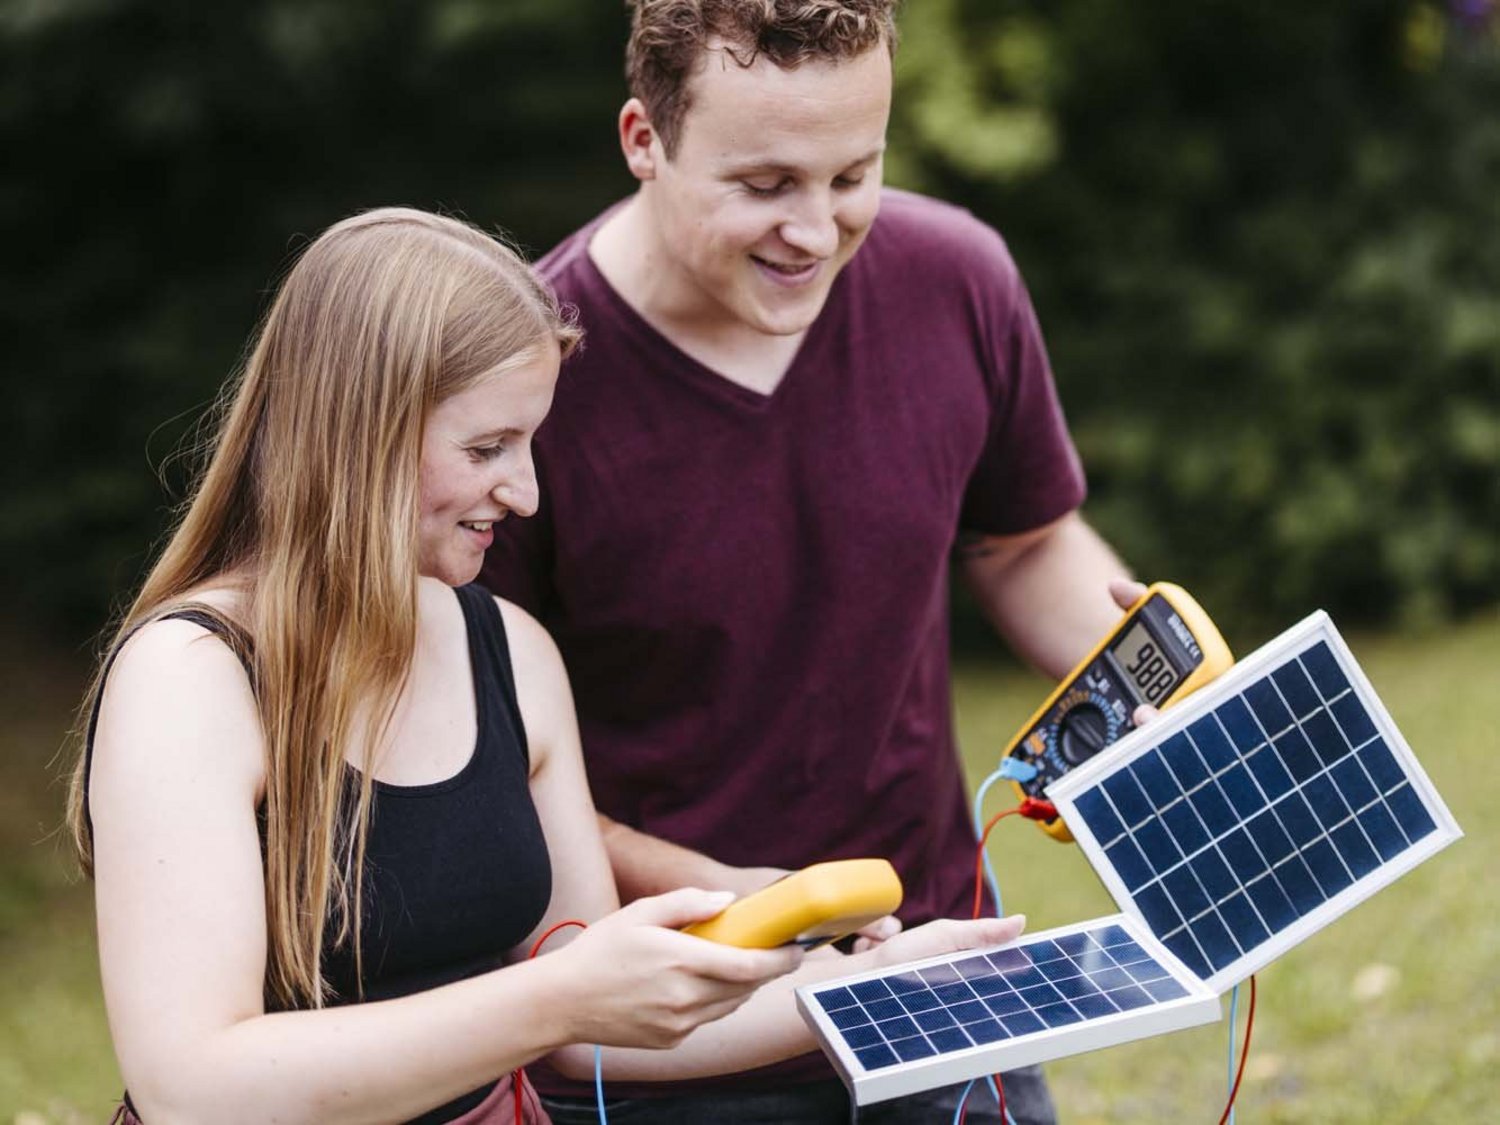 Zwei Personen sind zu sehen, sie halten sowohl ein Solarstrommesser als auch eine Solarscheibe in der Hand.